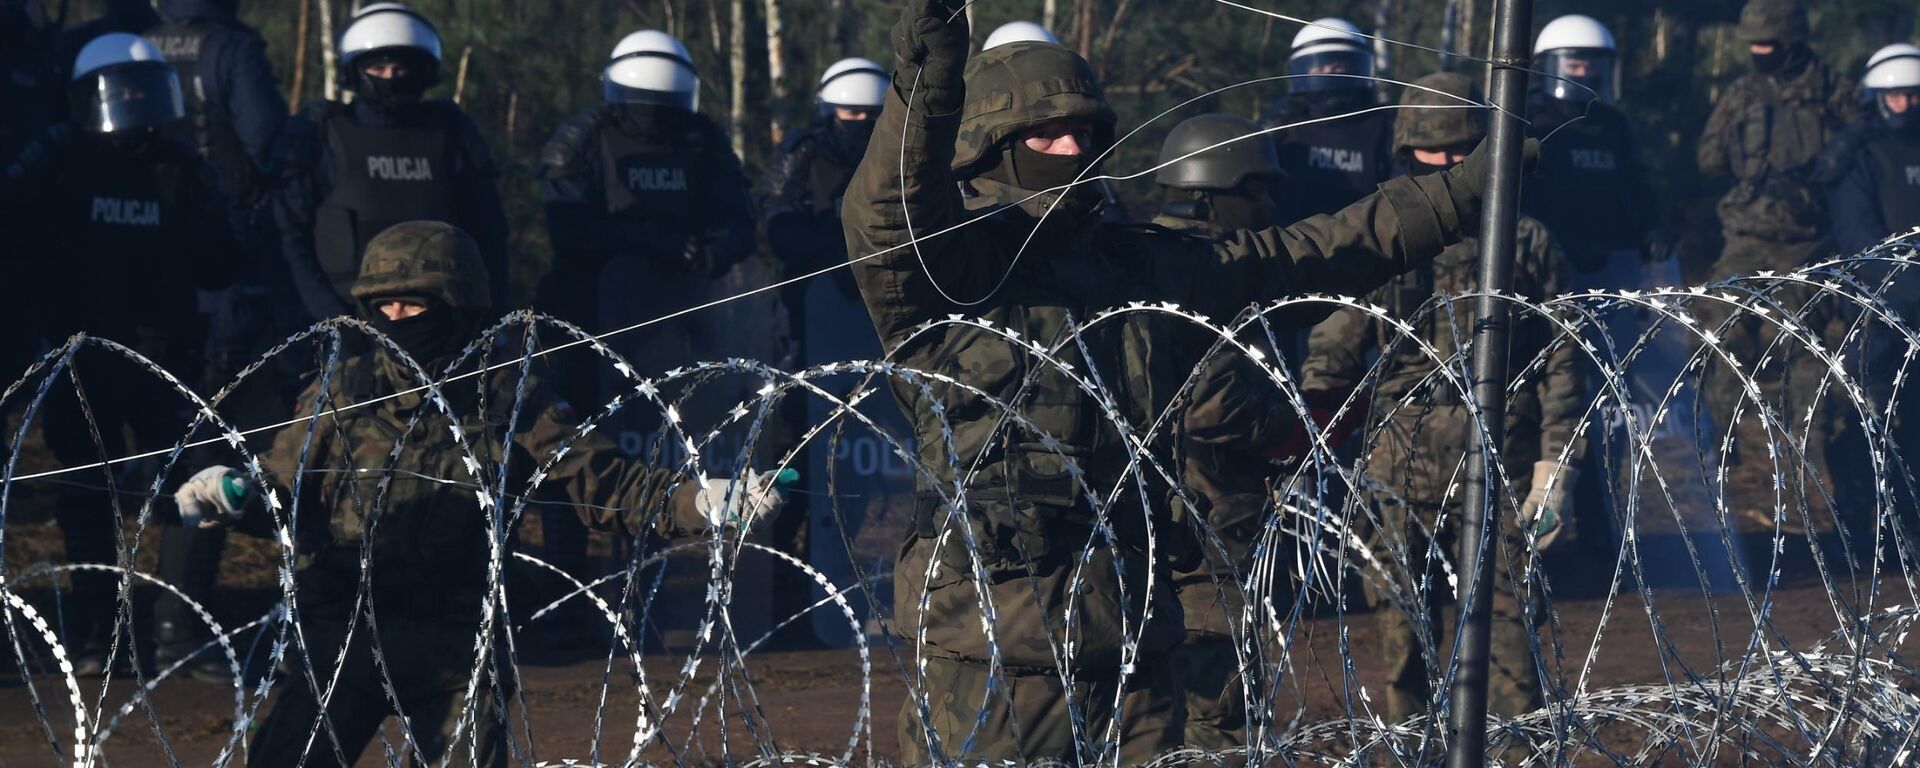 Полиция и военные Польши охраняют границу от мигрантов - Sputnik Беларусь, 1920, 23.11.2021